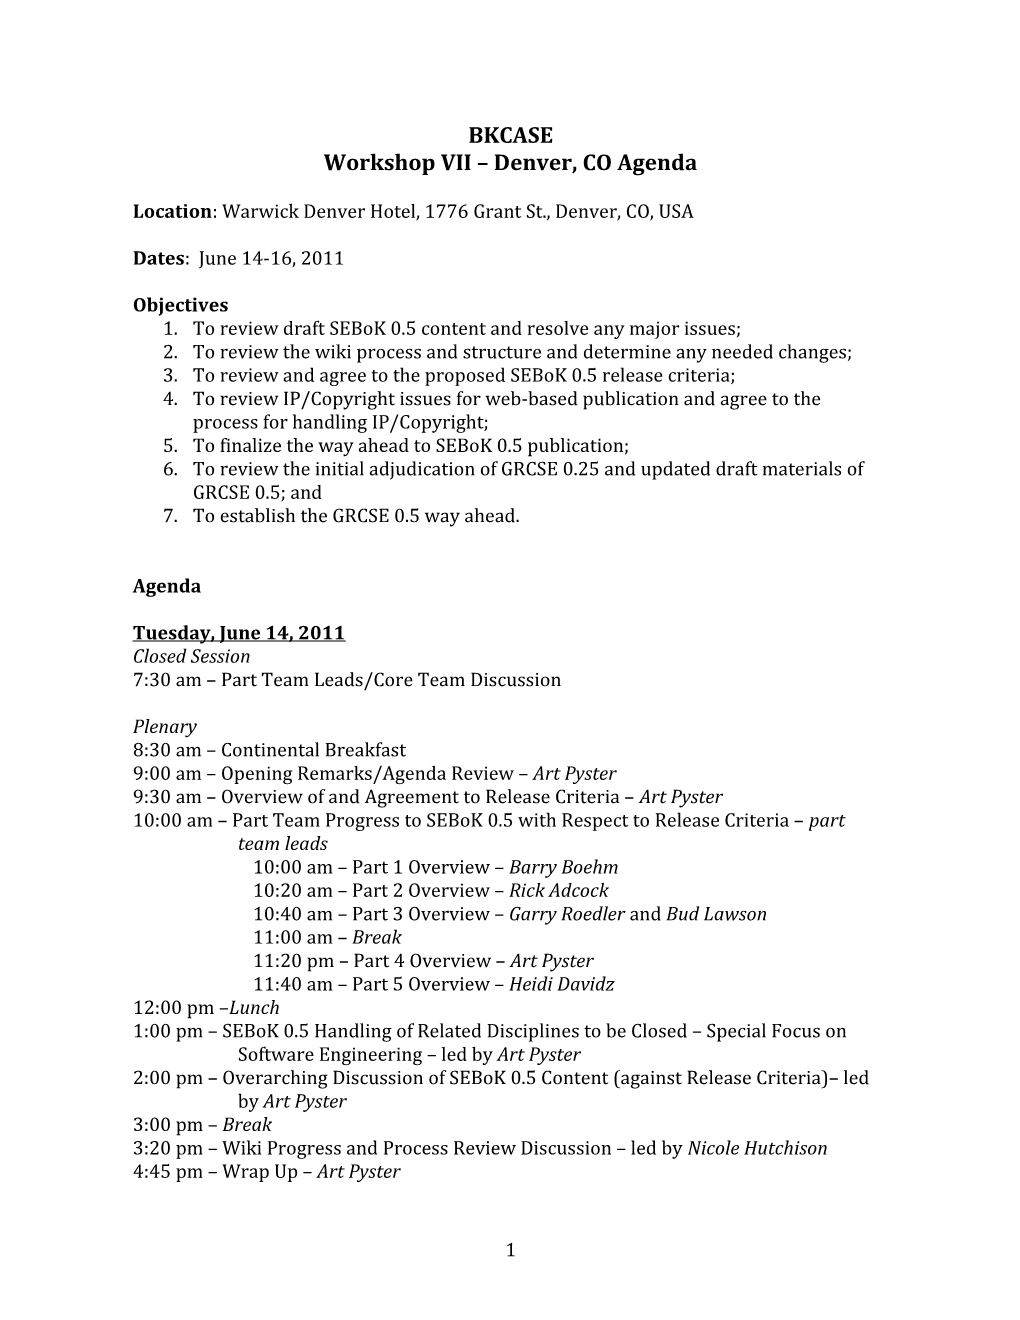 Workshop VII Denver, CO Agenda